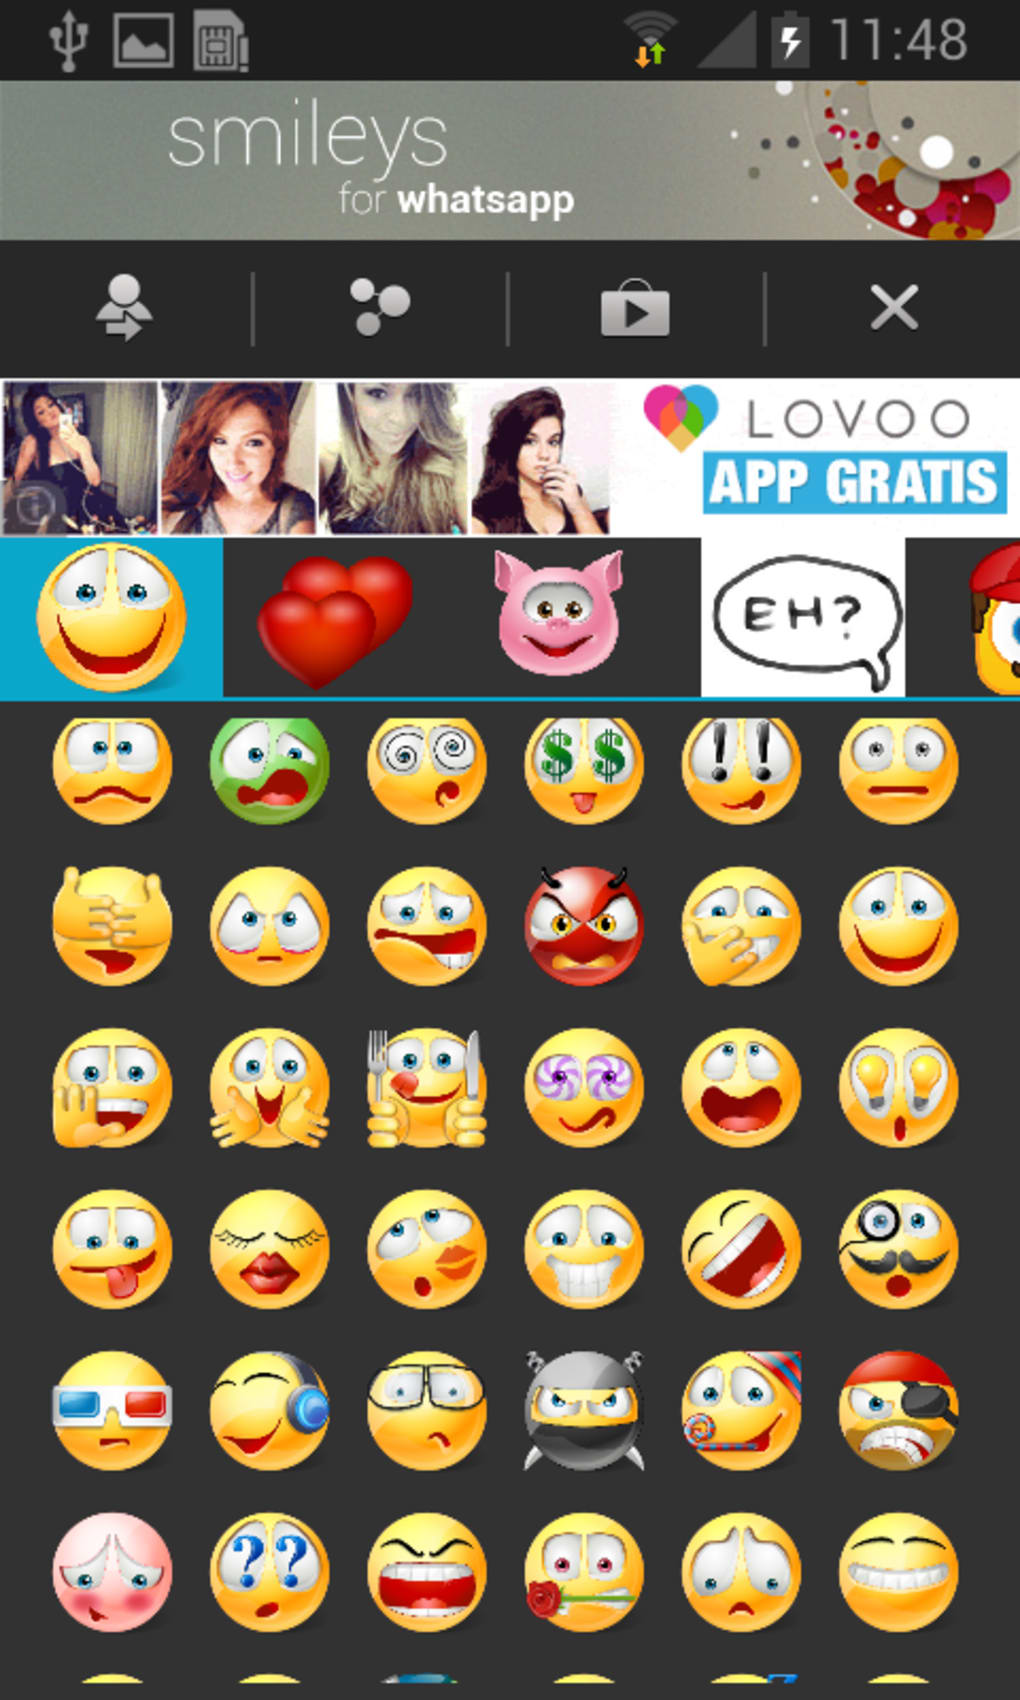 i love you in skype emojis